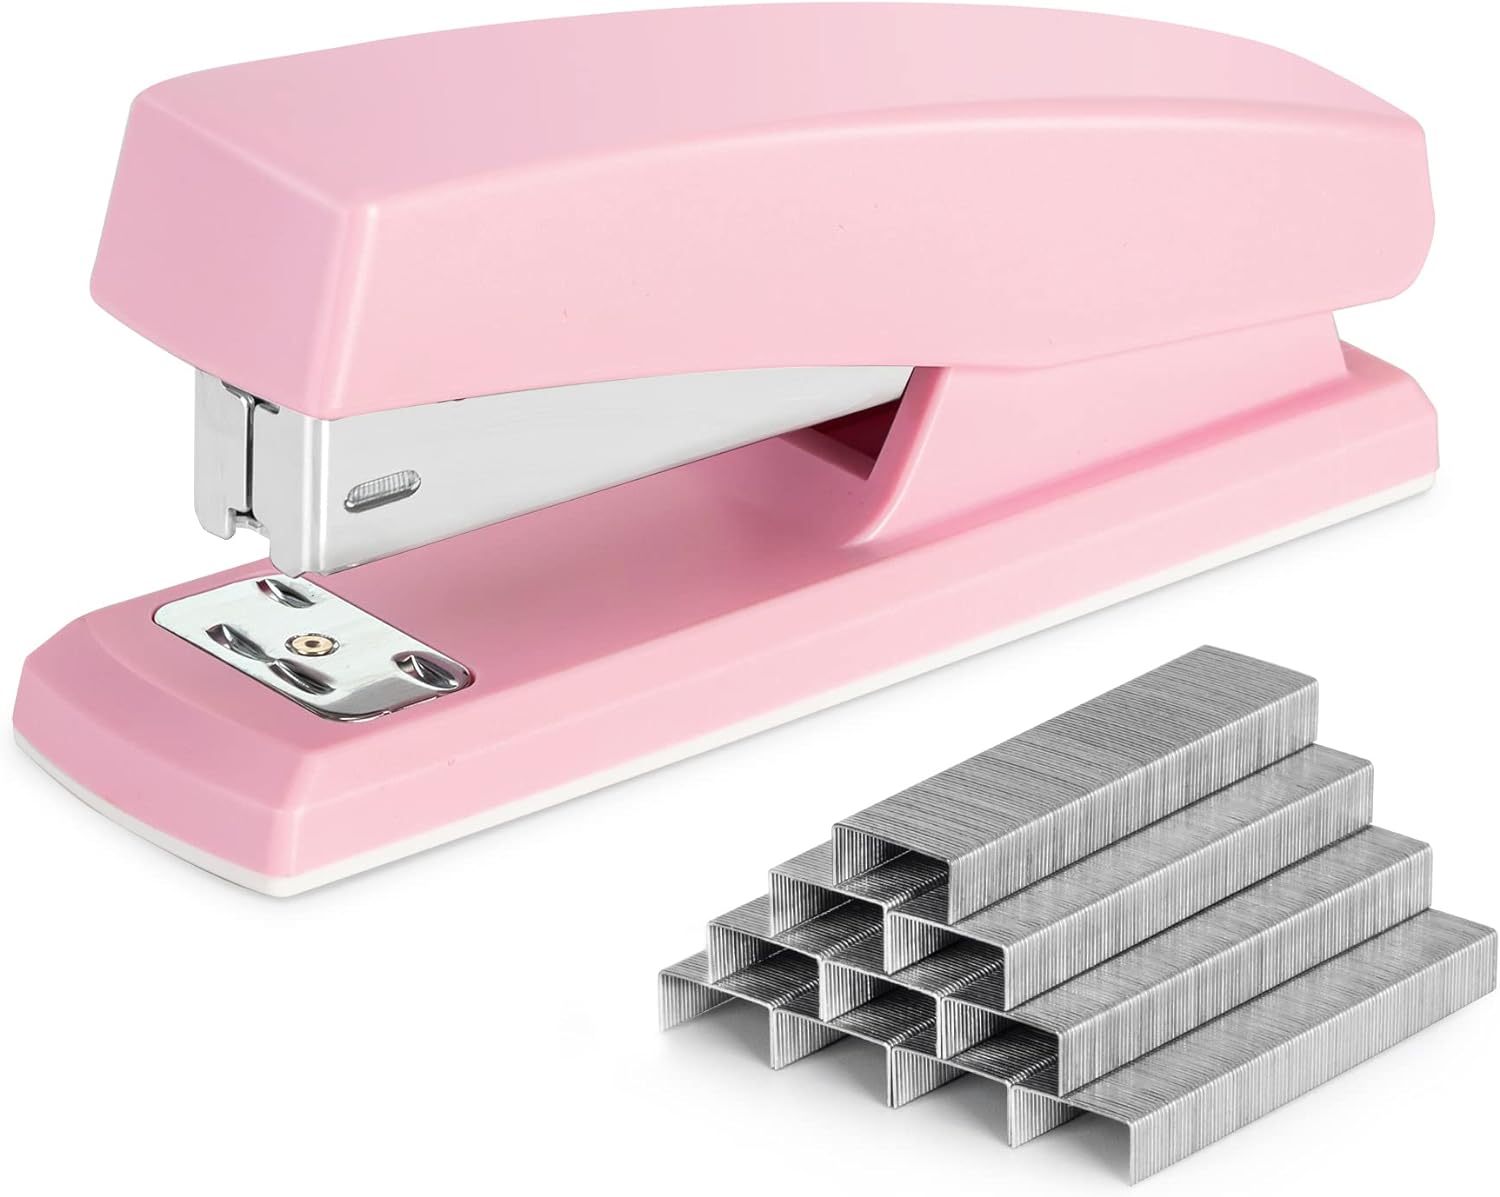 Deli Stapler, Desktop Staplers with 640 Staples, Office Stapler, 25 Sheet Capacity, Pink